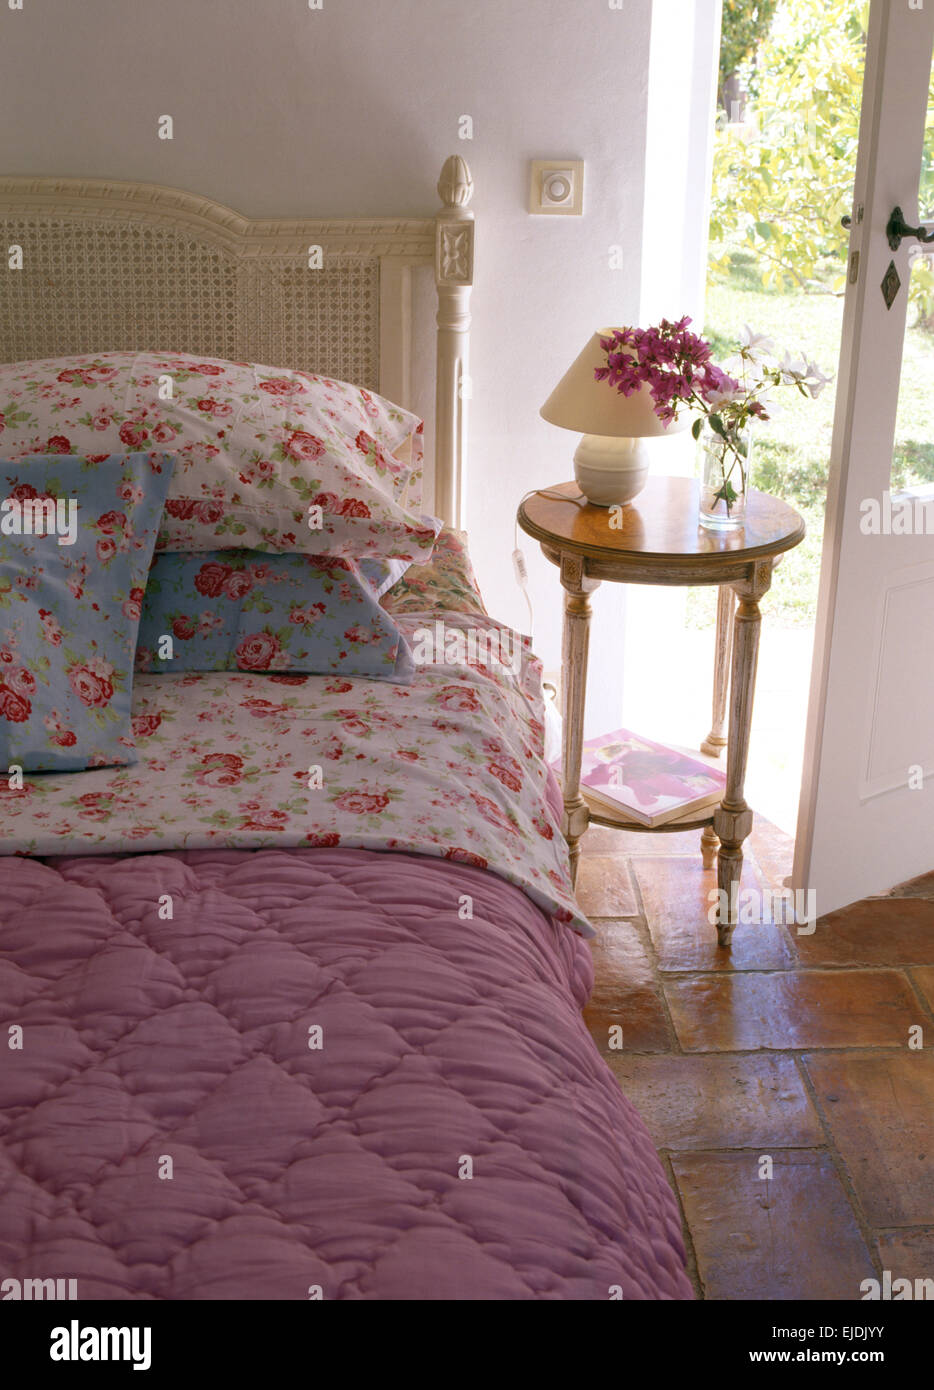 Rose modellato cuscini e piumini rosa sul letto nel paese francese camera da letto con piccolo comodino Foto Stock